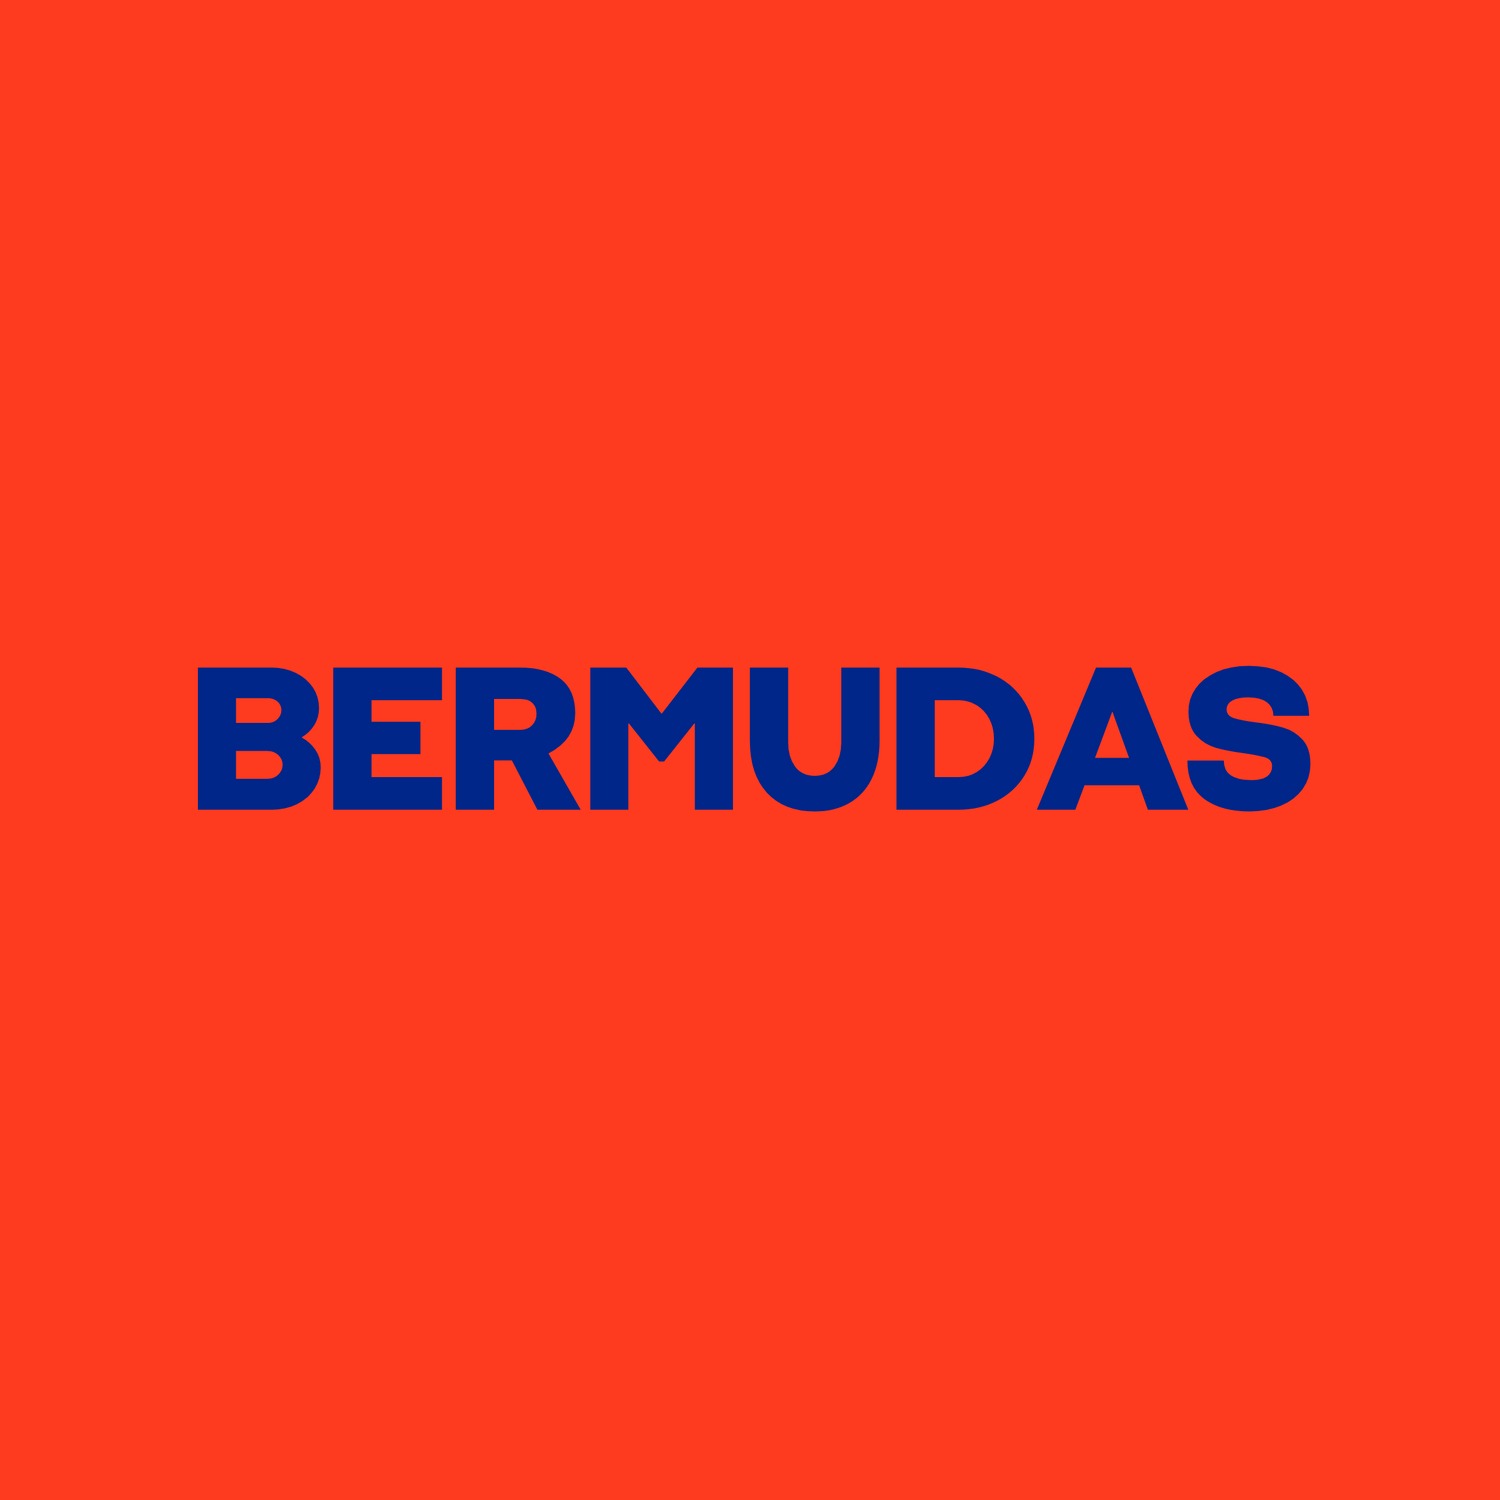 BERMUDAS